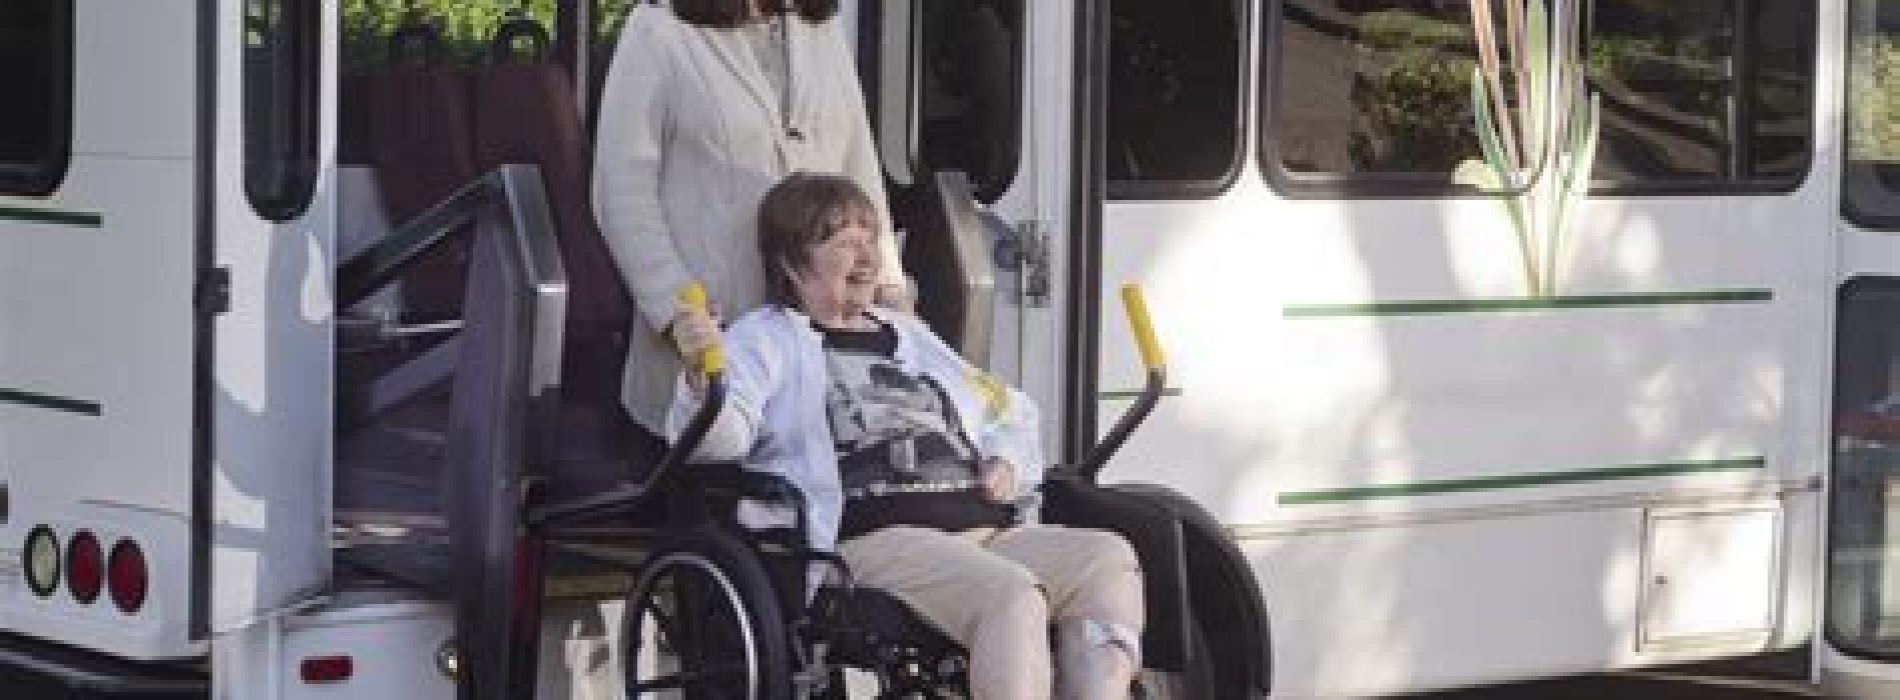 Lage vitamine K-waarden geassocieerd met invaliditeit en mobiliteitsbeperkingen bij ouderen